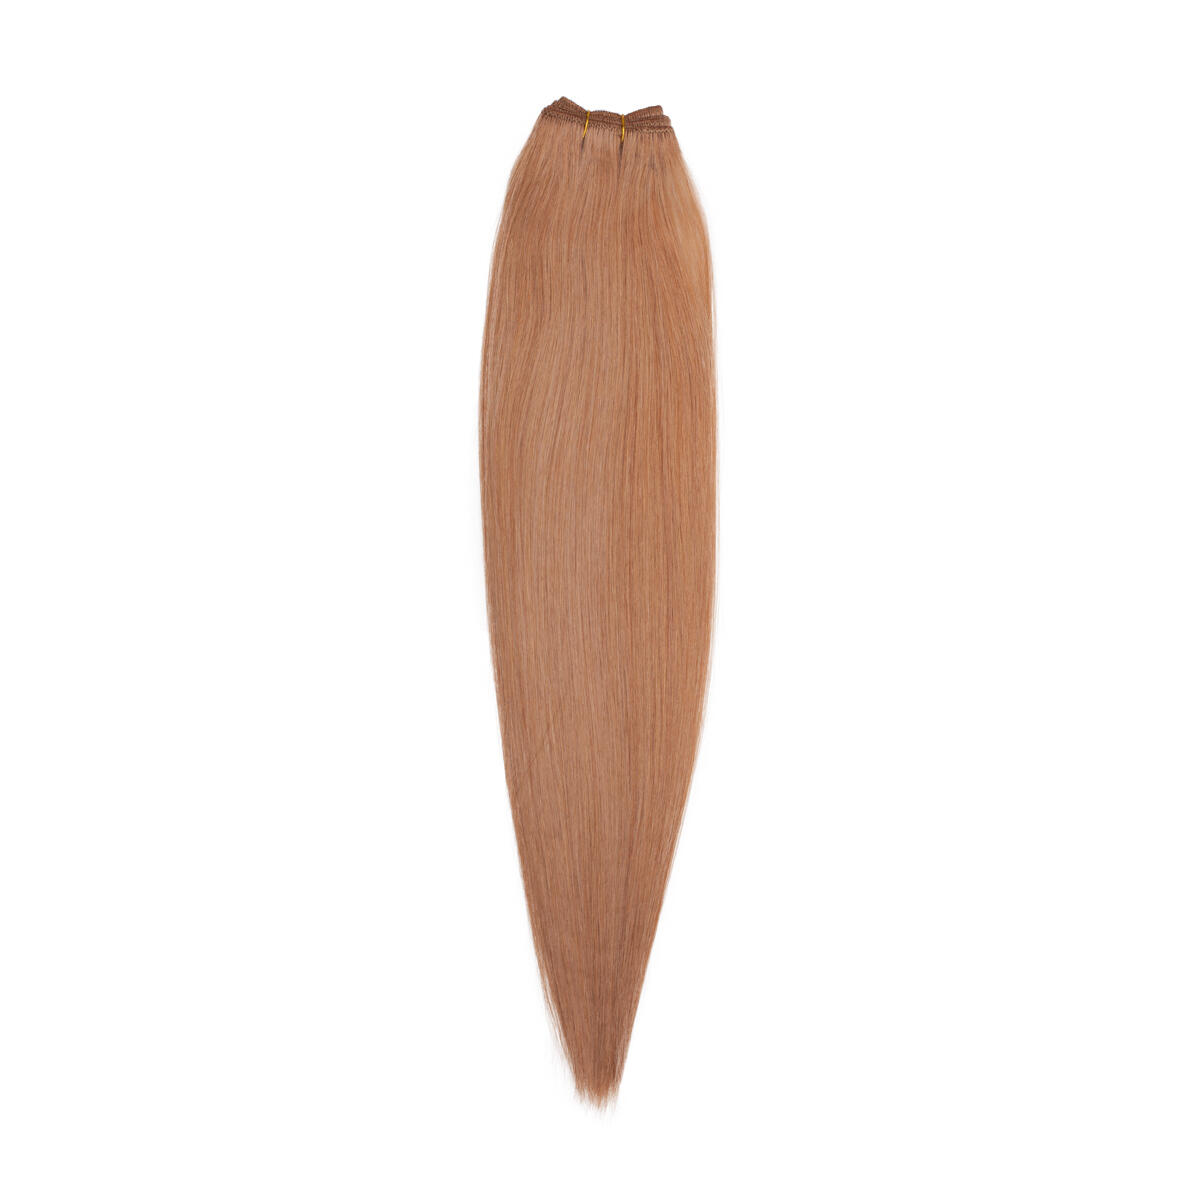 Hair Weft Premium 7.4 Medium Golden Blonde 50 cm